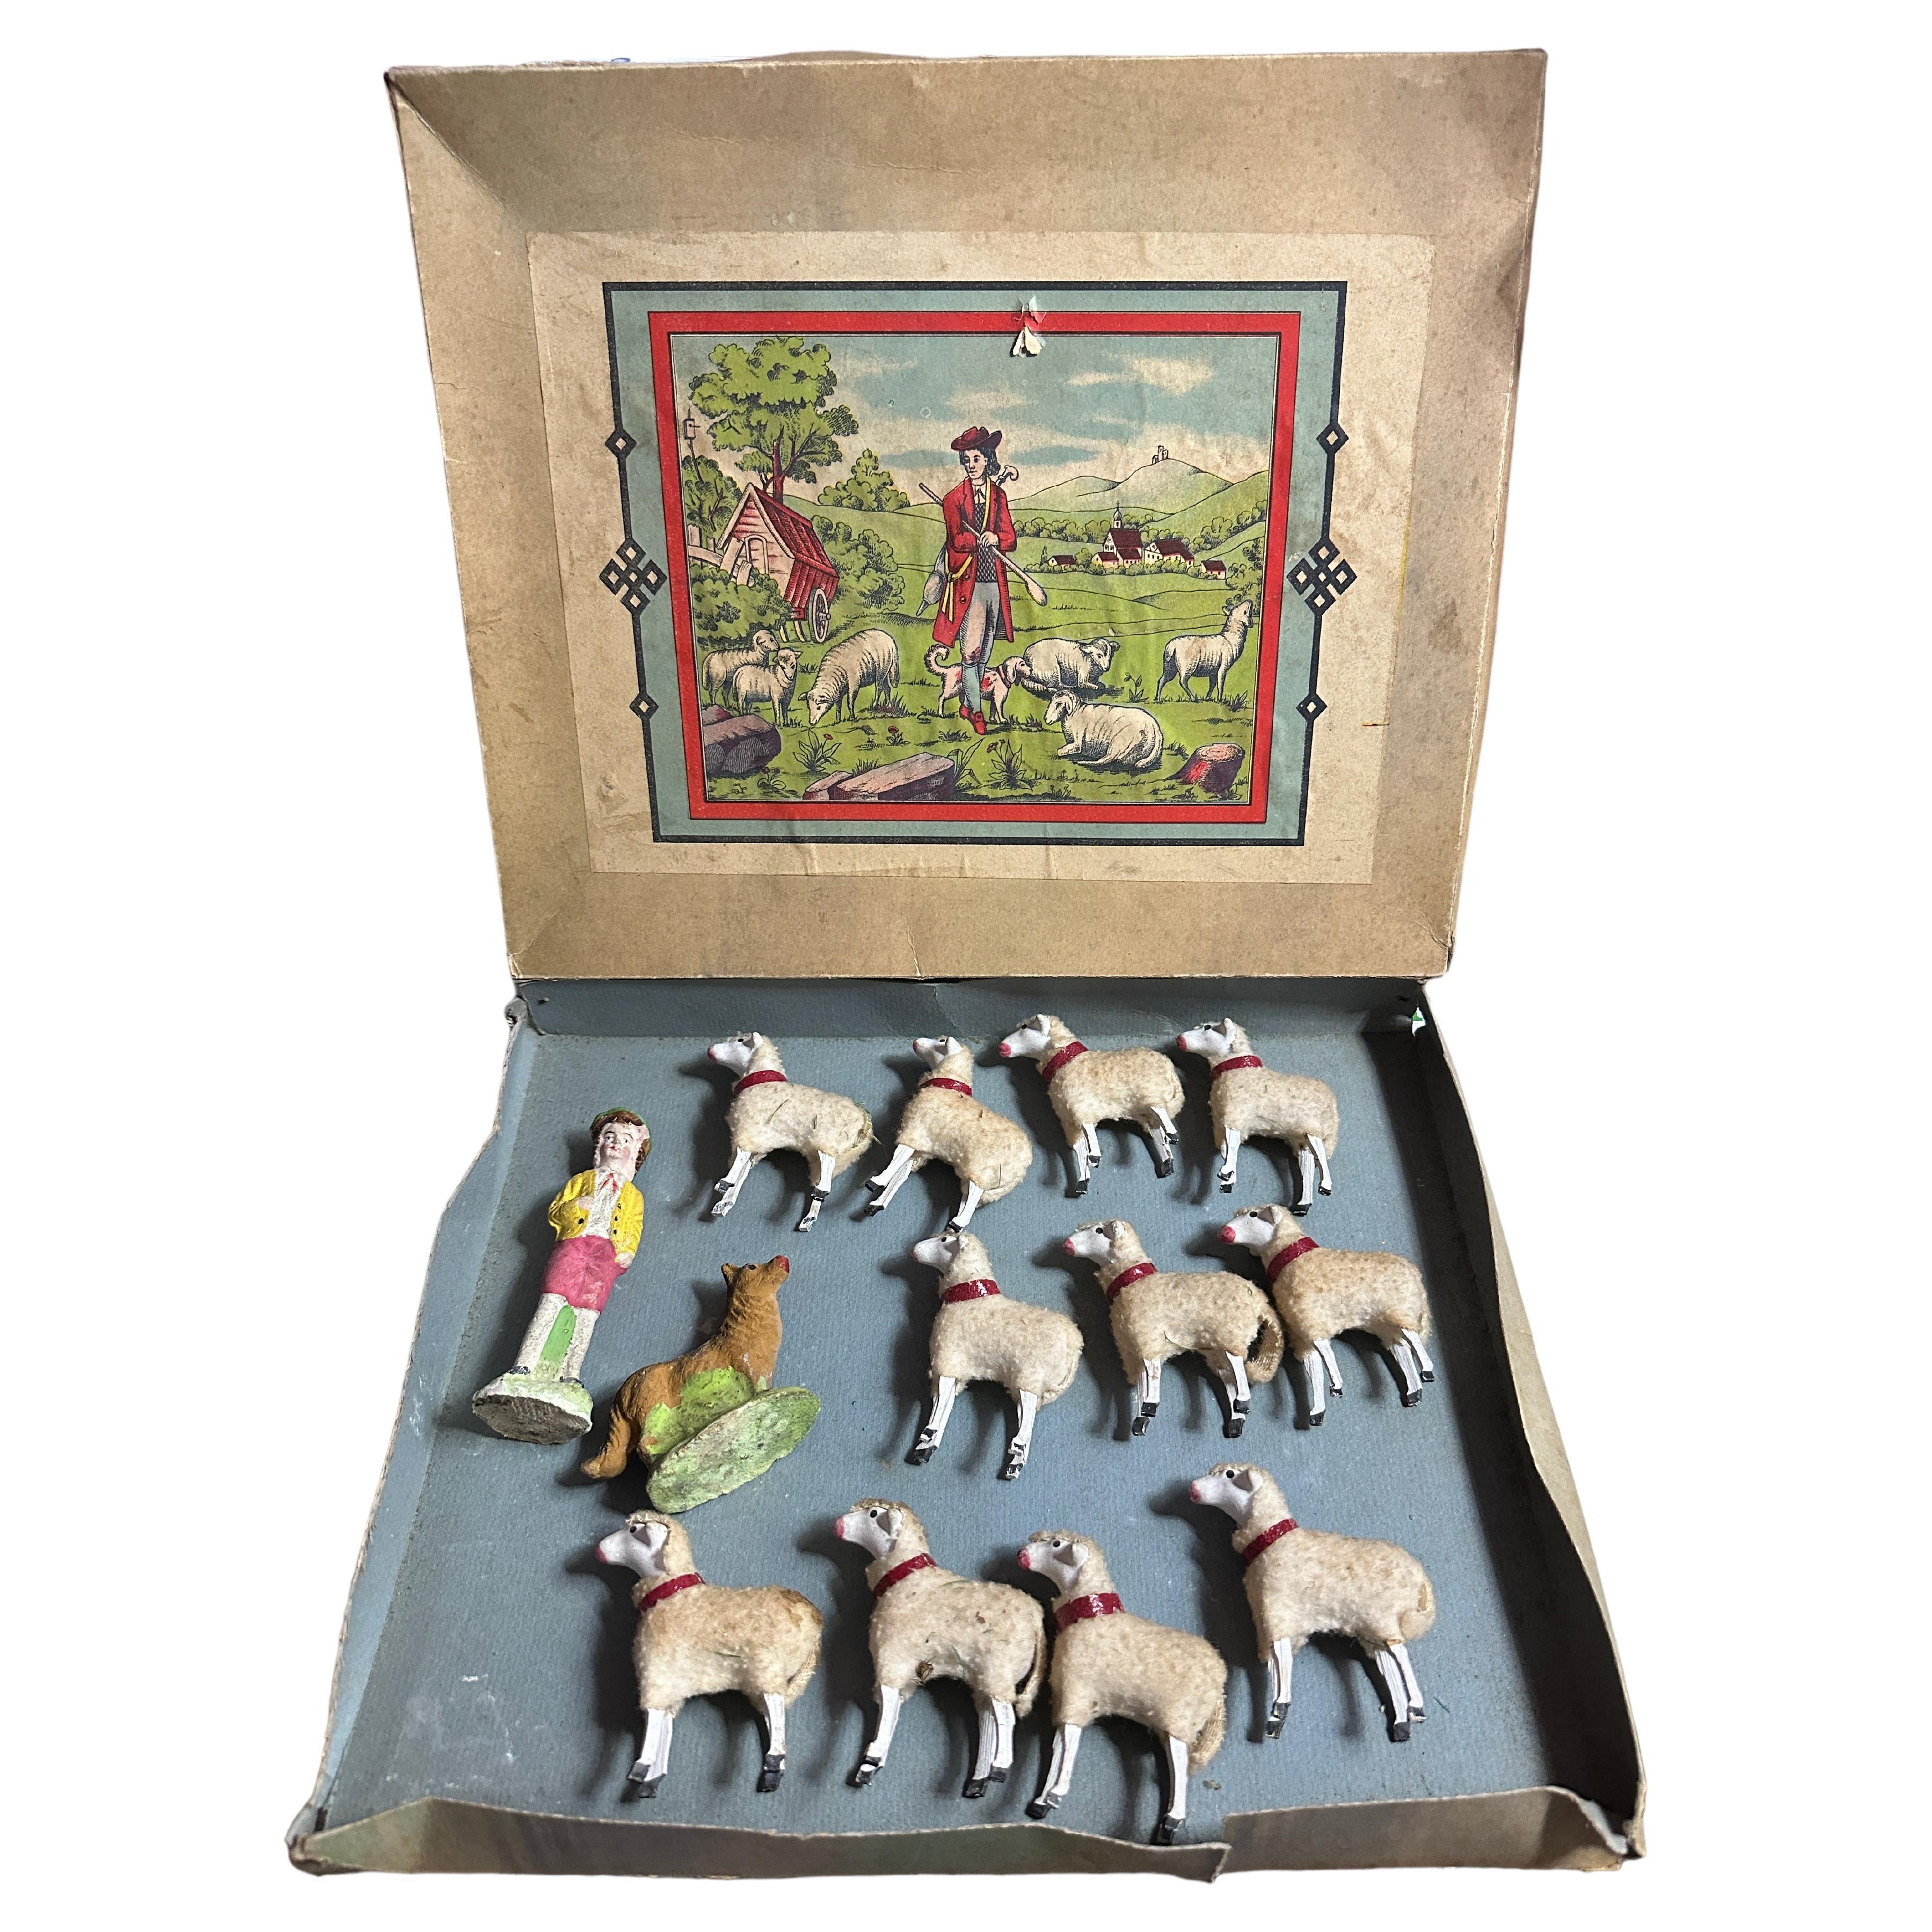 Berger et mouton laineux Putz Toy Set Antique German Christmas 1900s, original Box